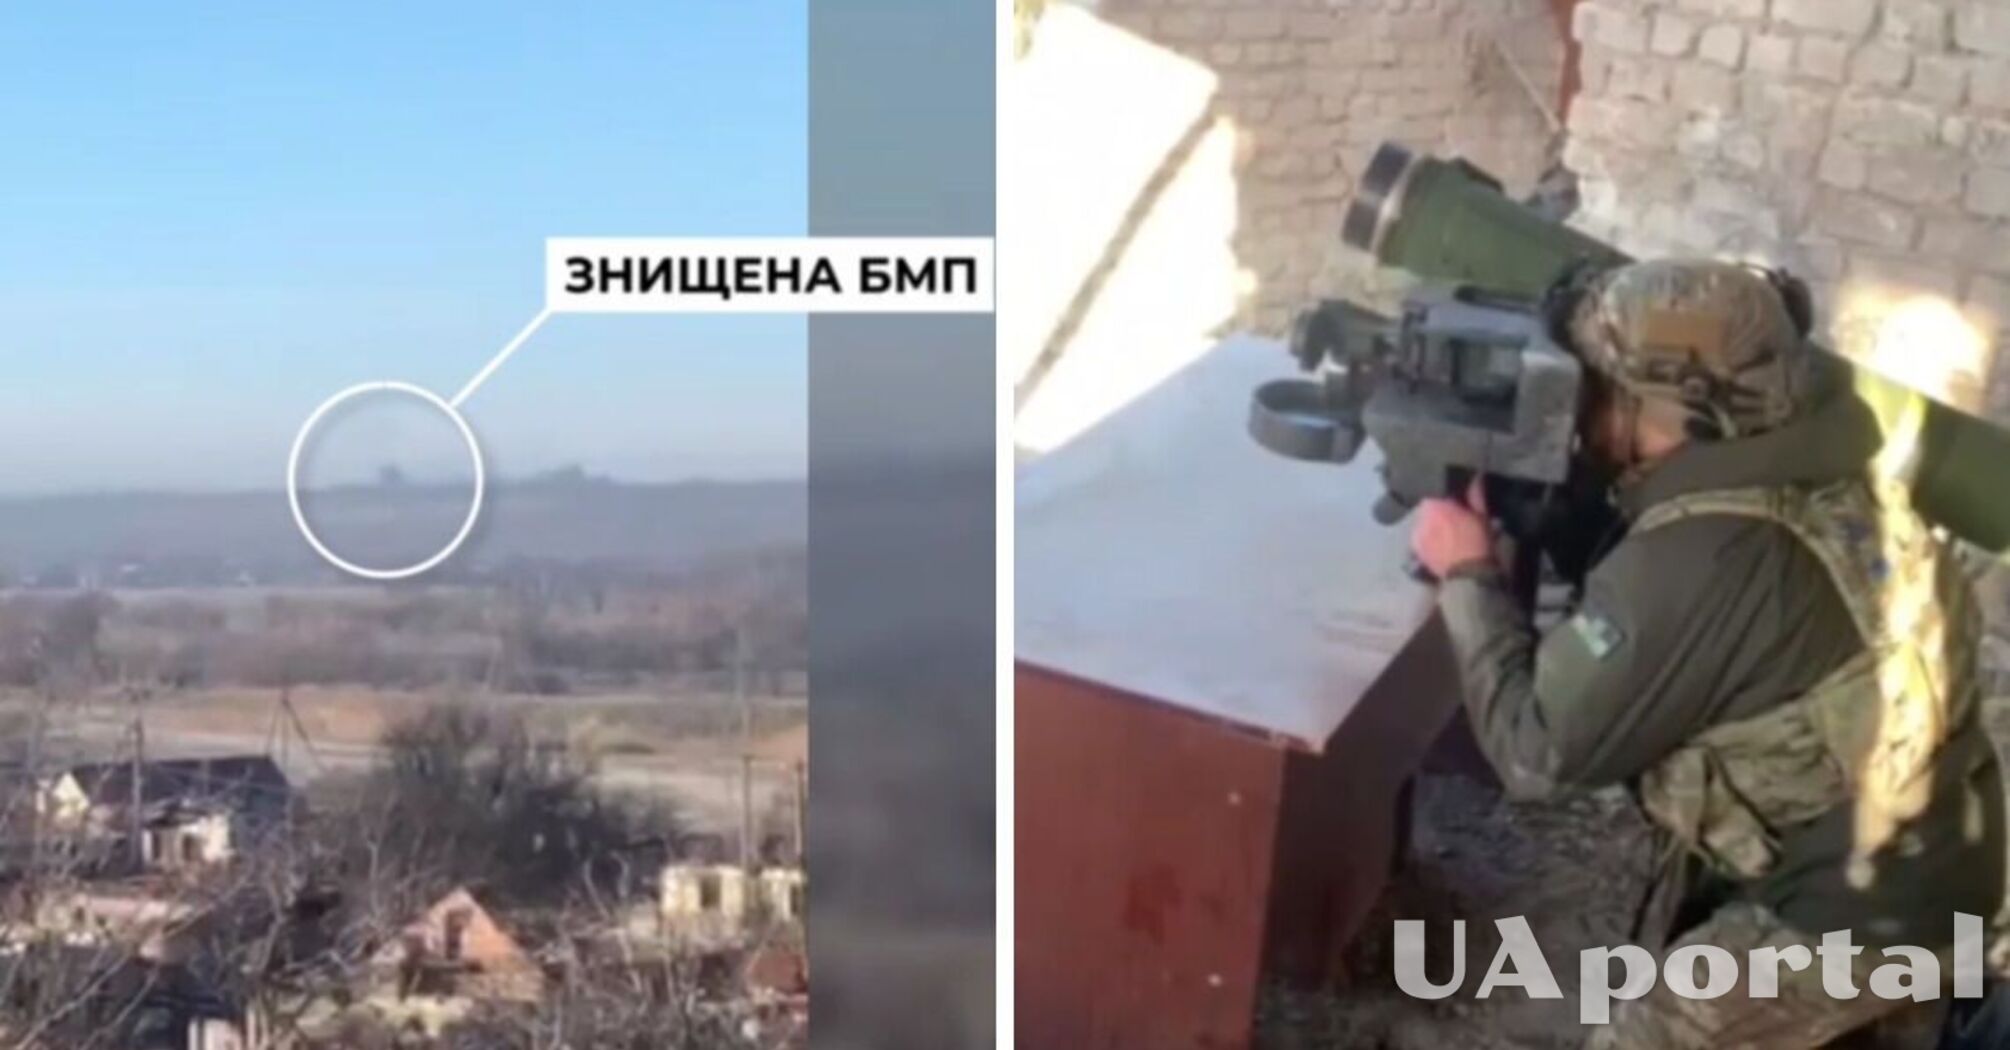 Спецназовцы СБУ уничтожили 'Джавелином' вражескую БМП вместе с пехотой на броне с расстояния 4 км (видео)